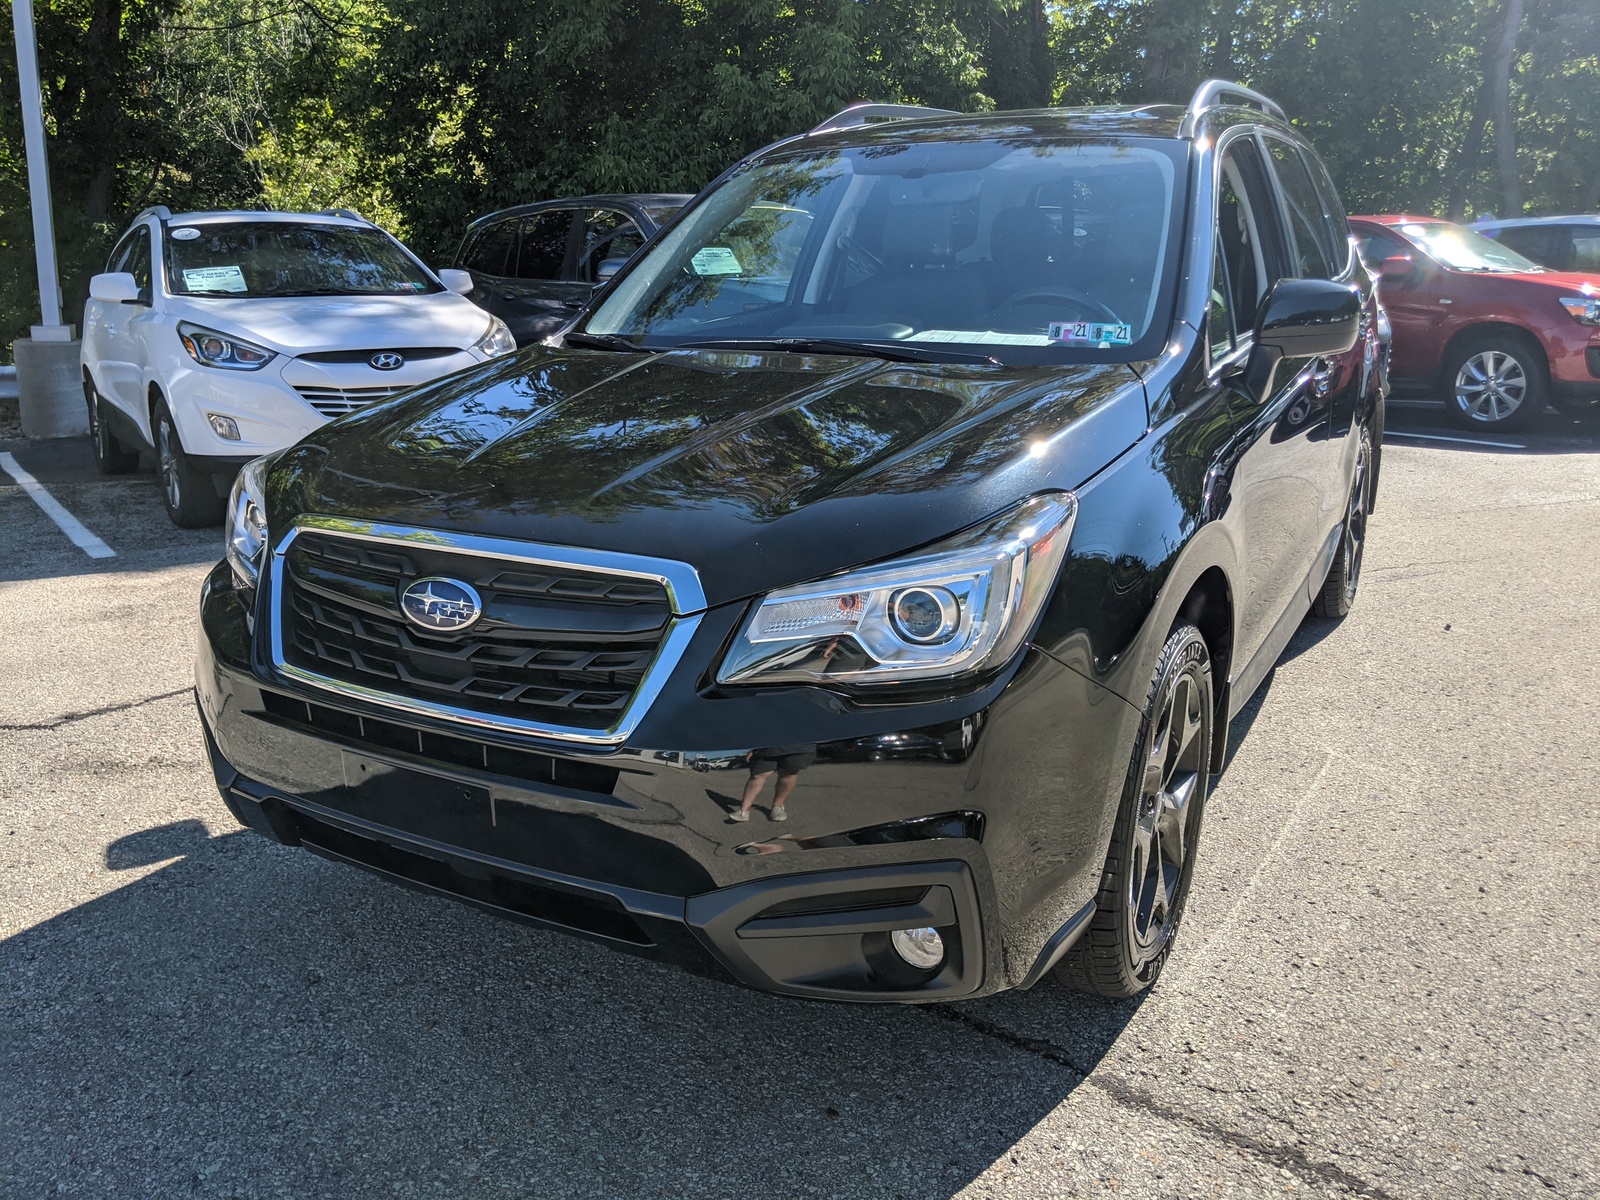 PreOwned 2018 Subaru Forester Premium Black Edition in